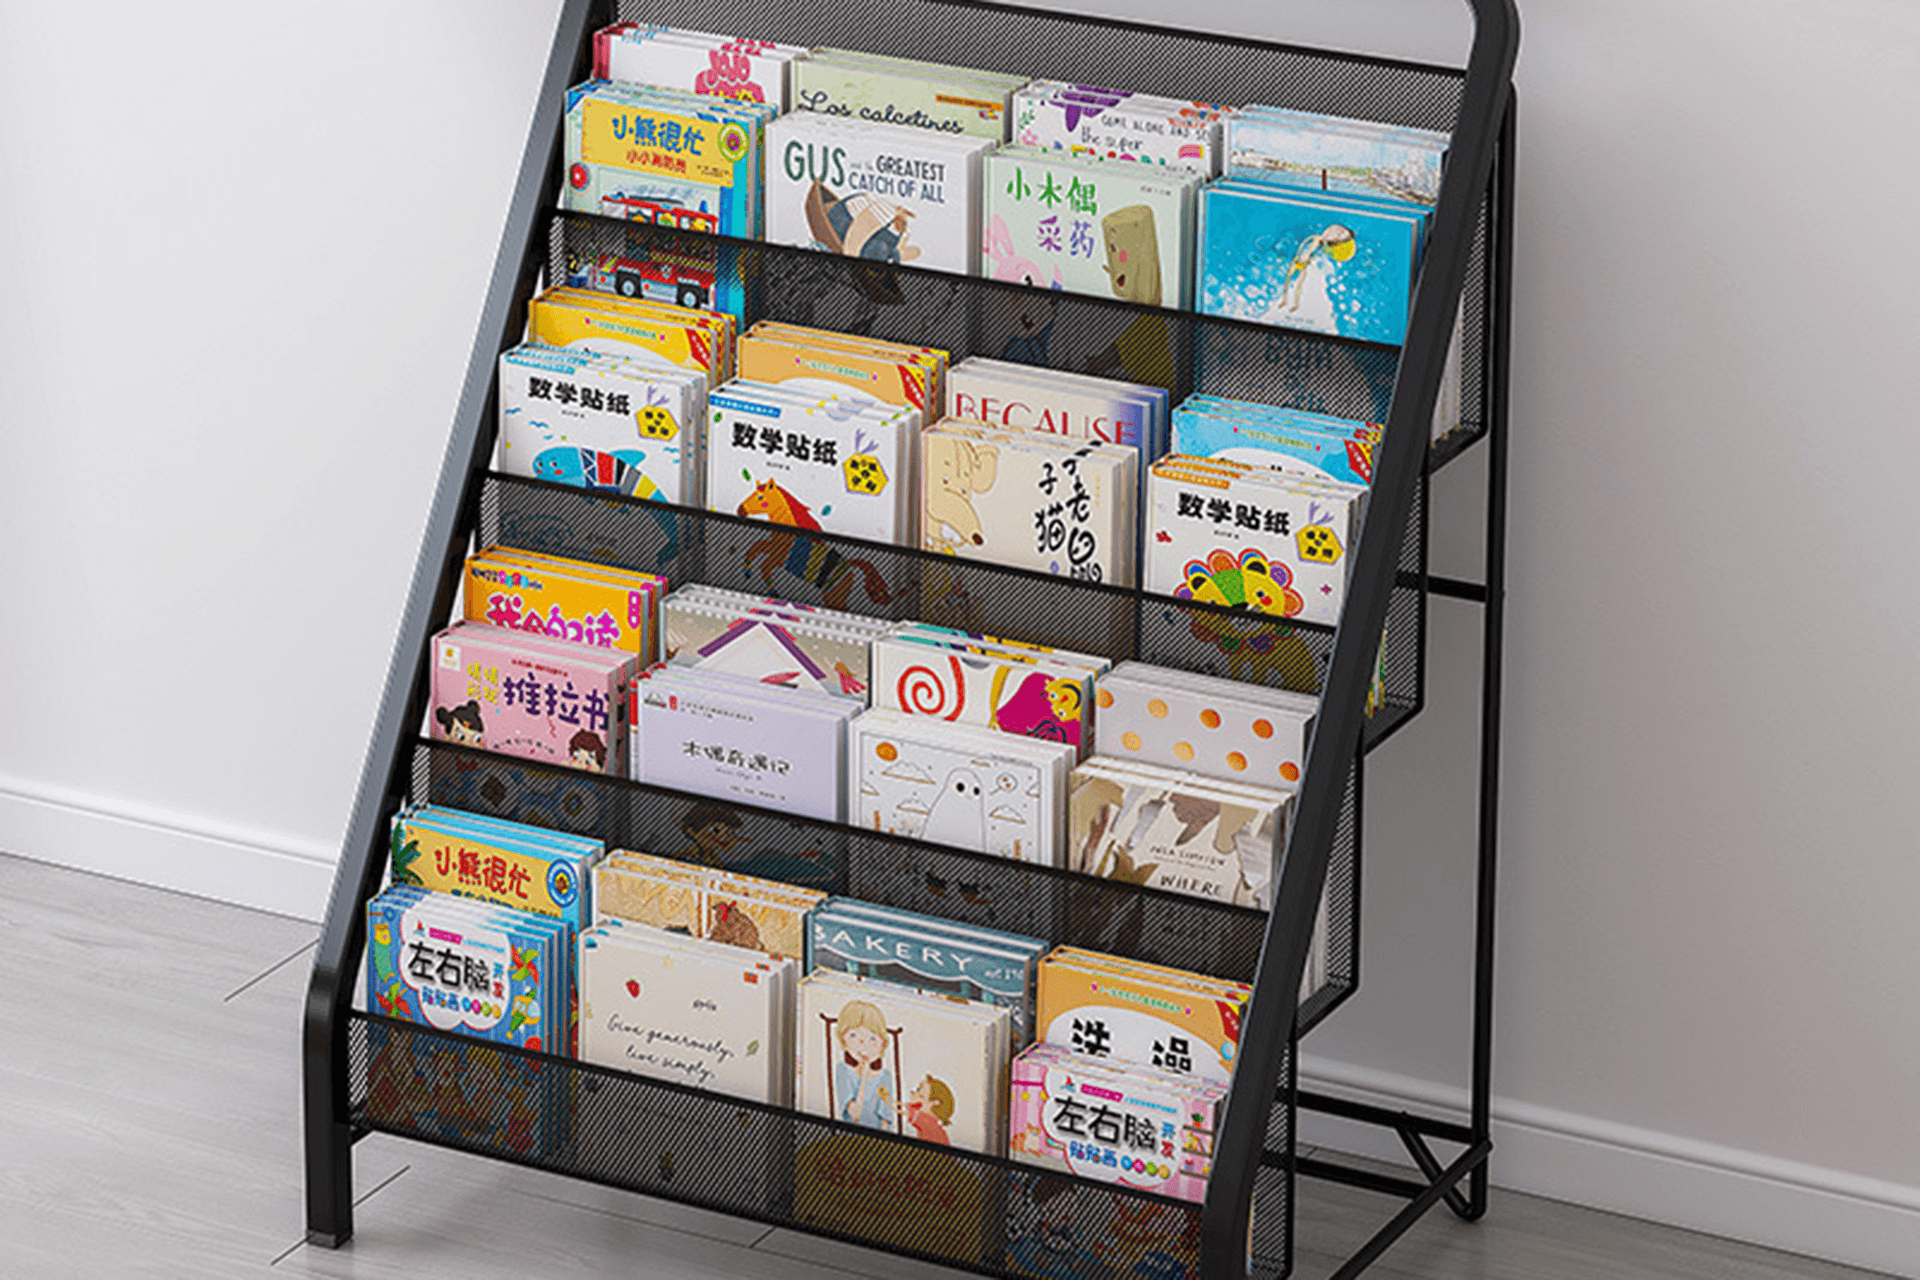 Magazine display stand